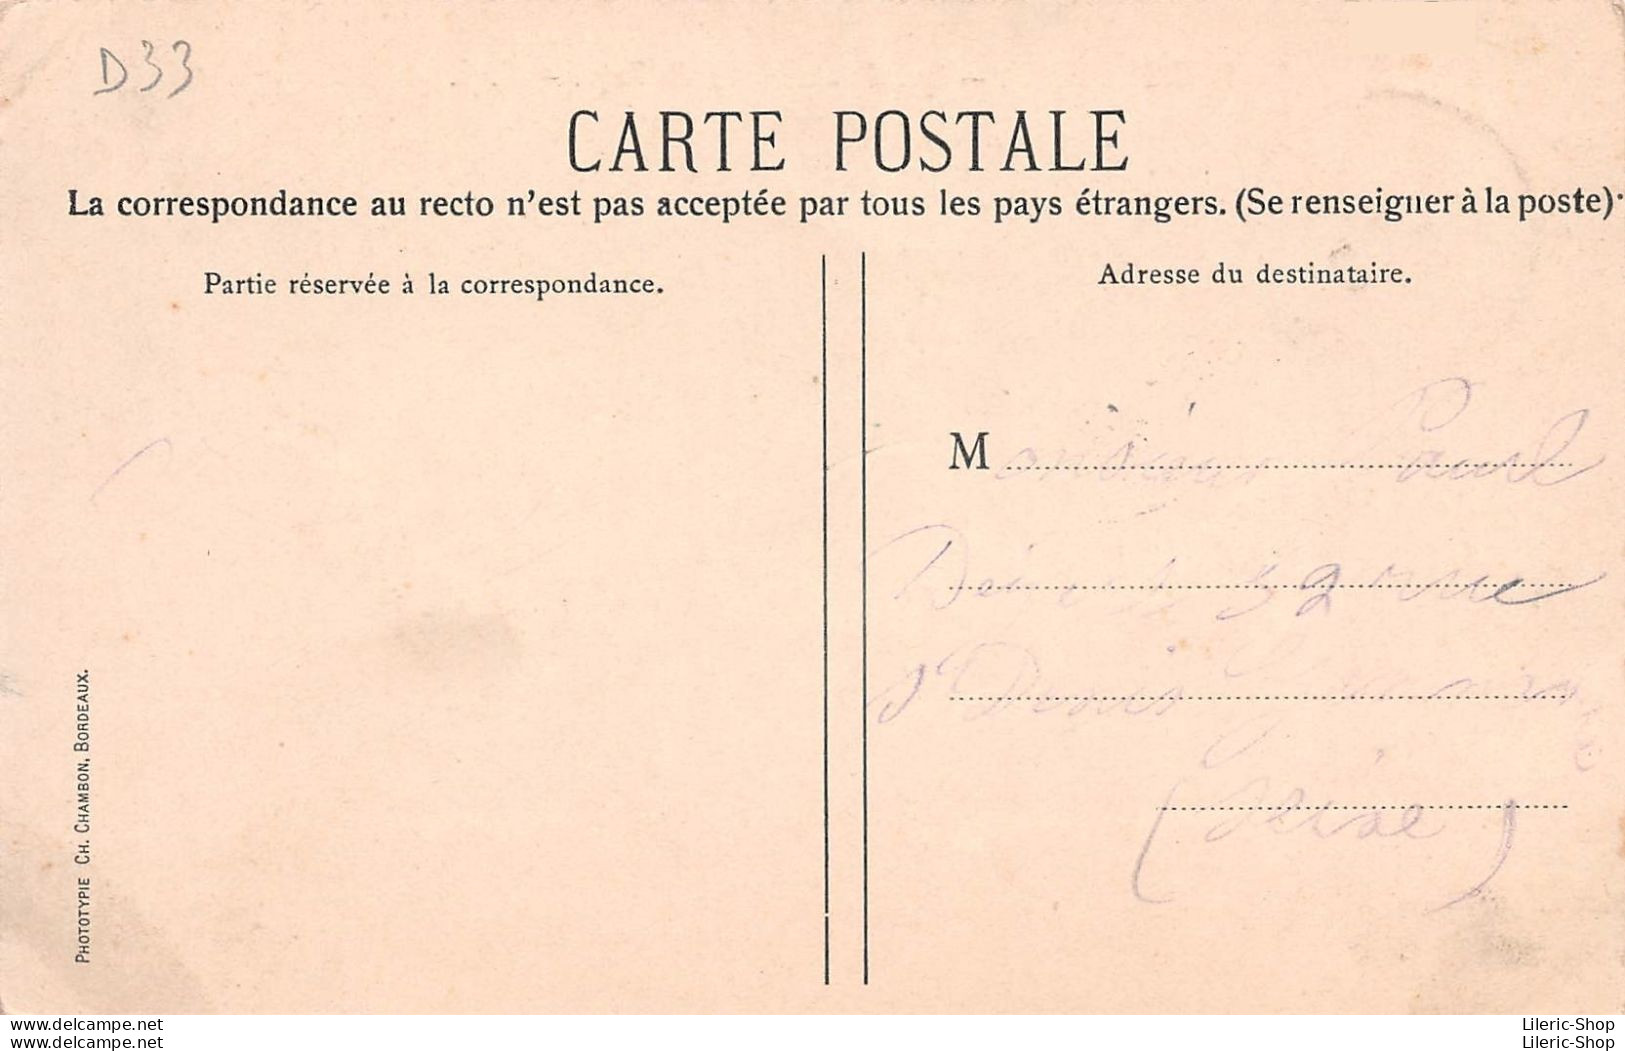 [33] BORDEAUX. - Les Quais Types Du Pays. — C. C. - Cpa 1905 - Bordeaux